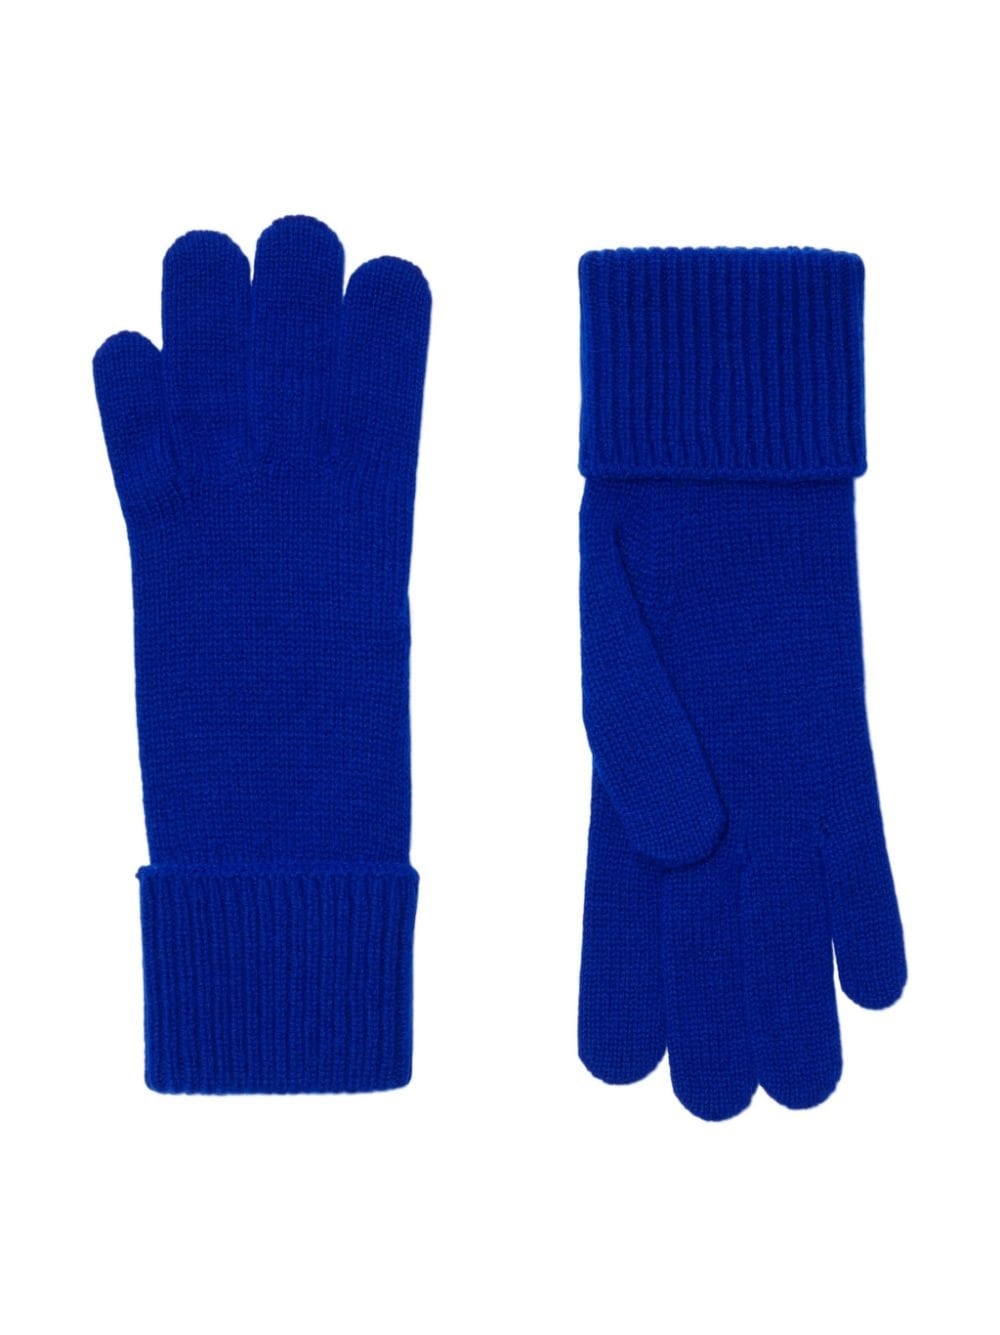 fine-knit full-finger gloves - 2